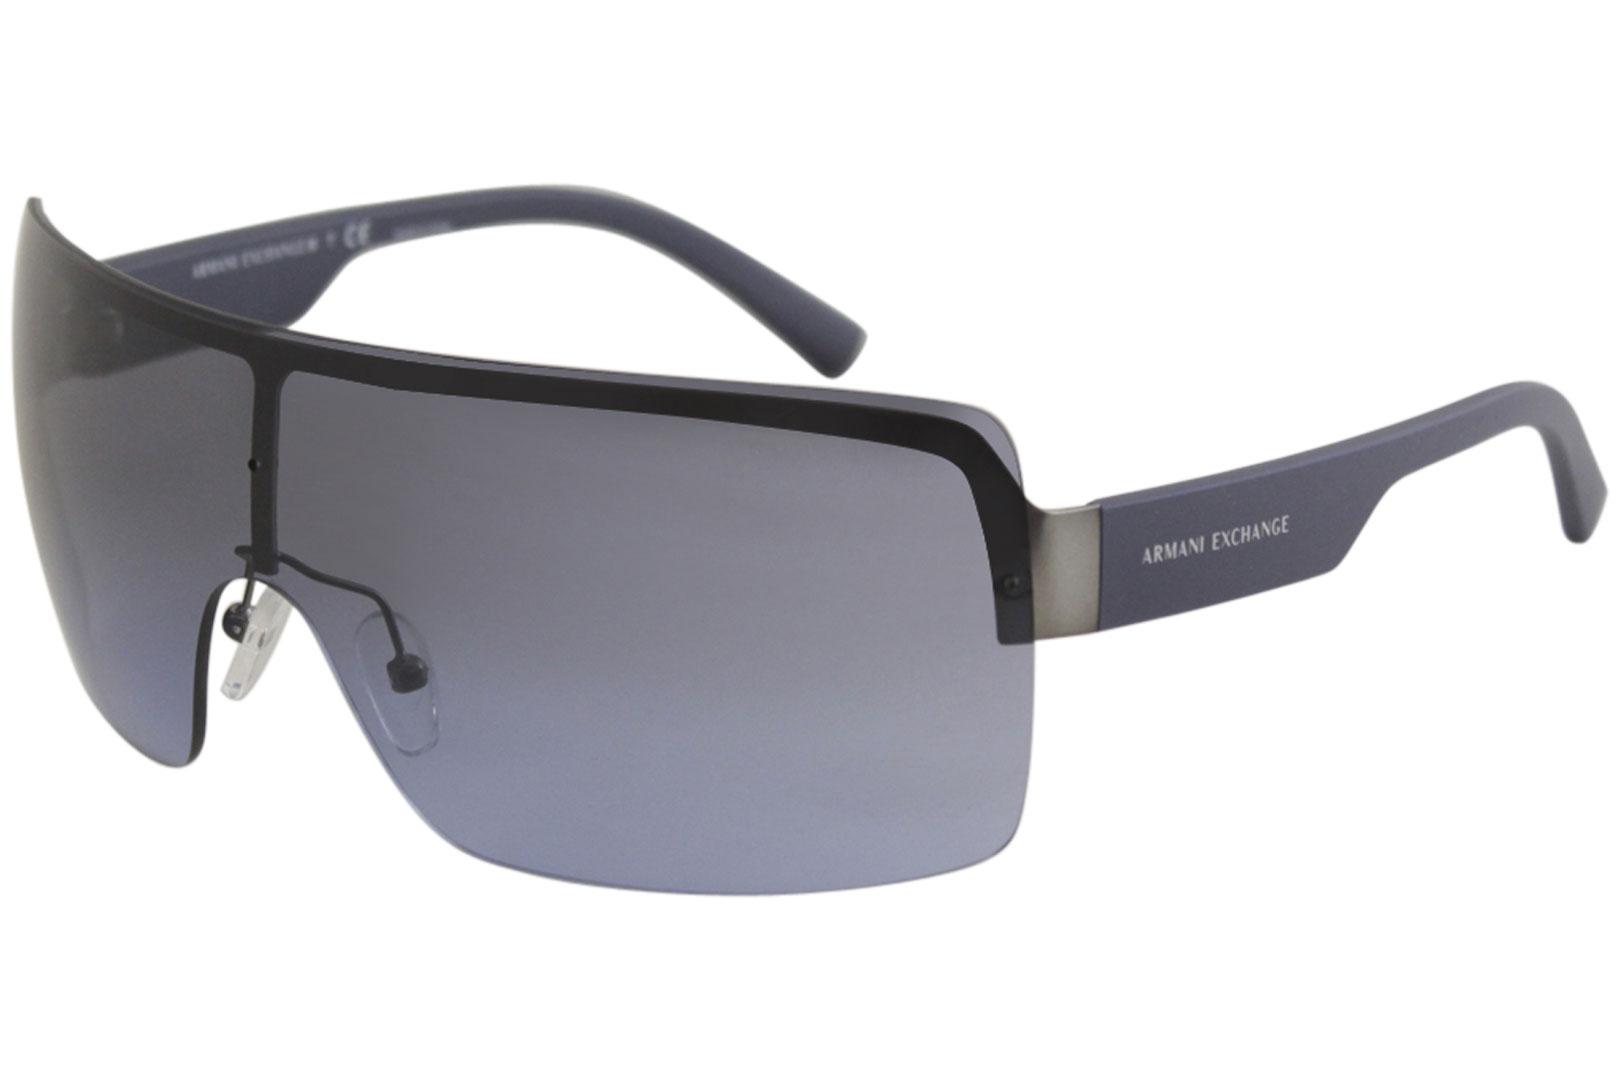 armani exchange sunglasses price